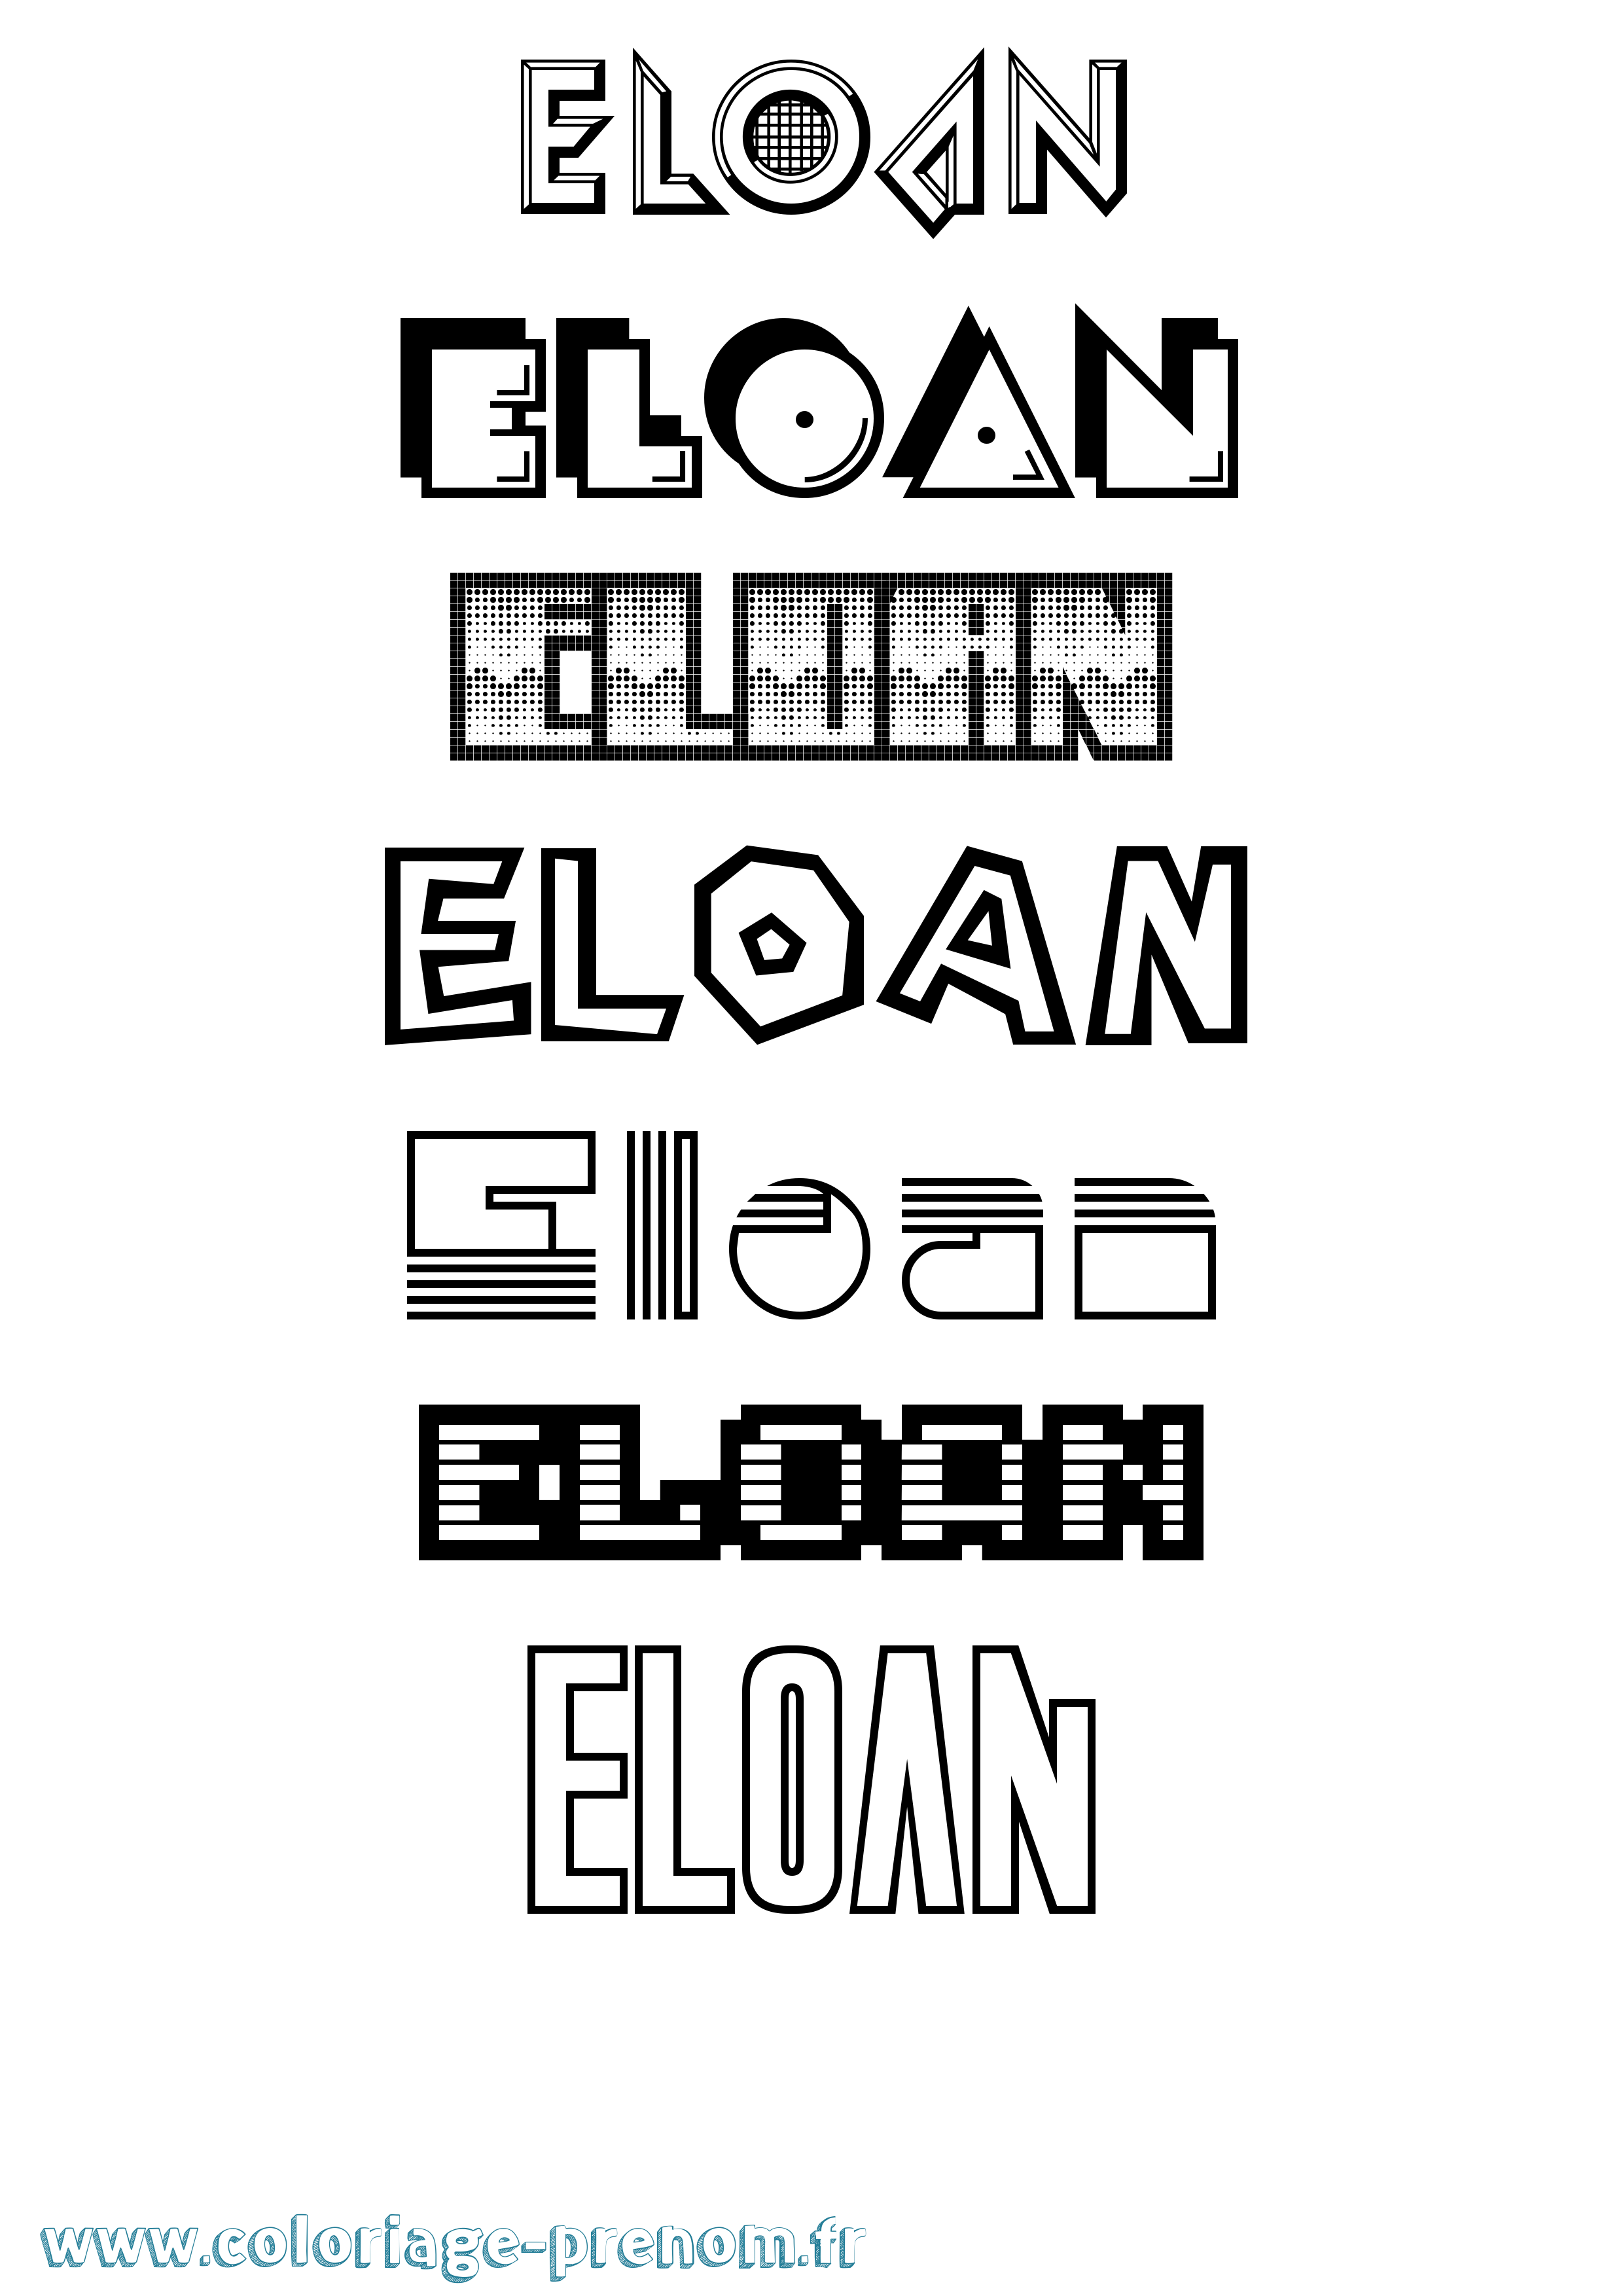 Coloriage prénom Eloan